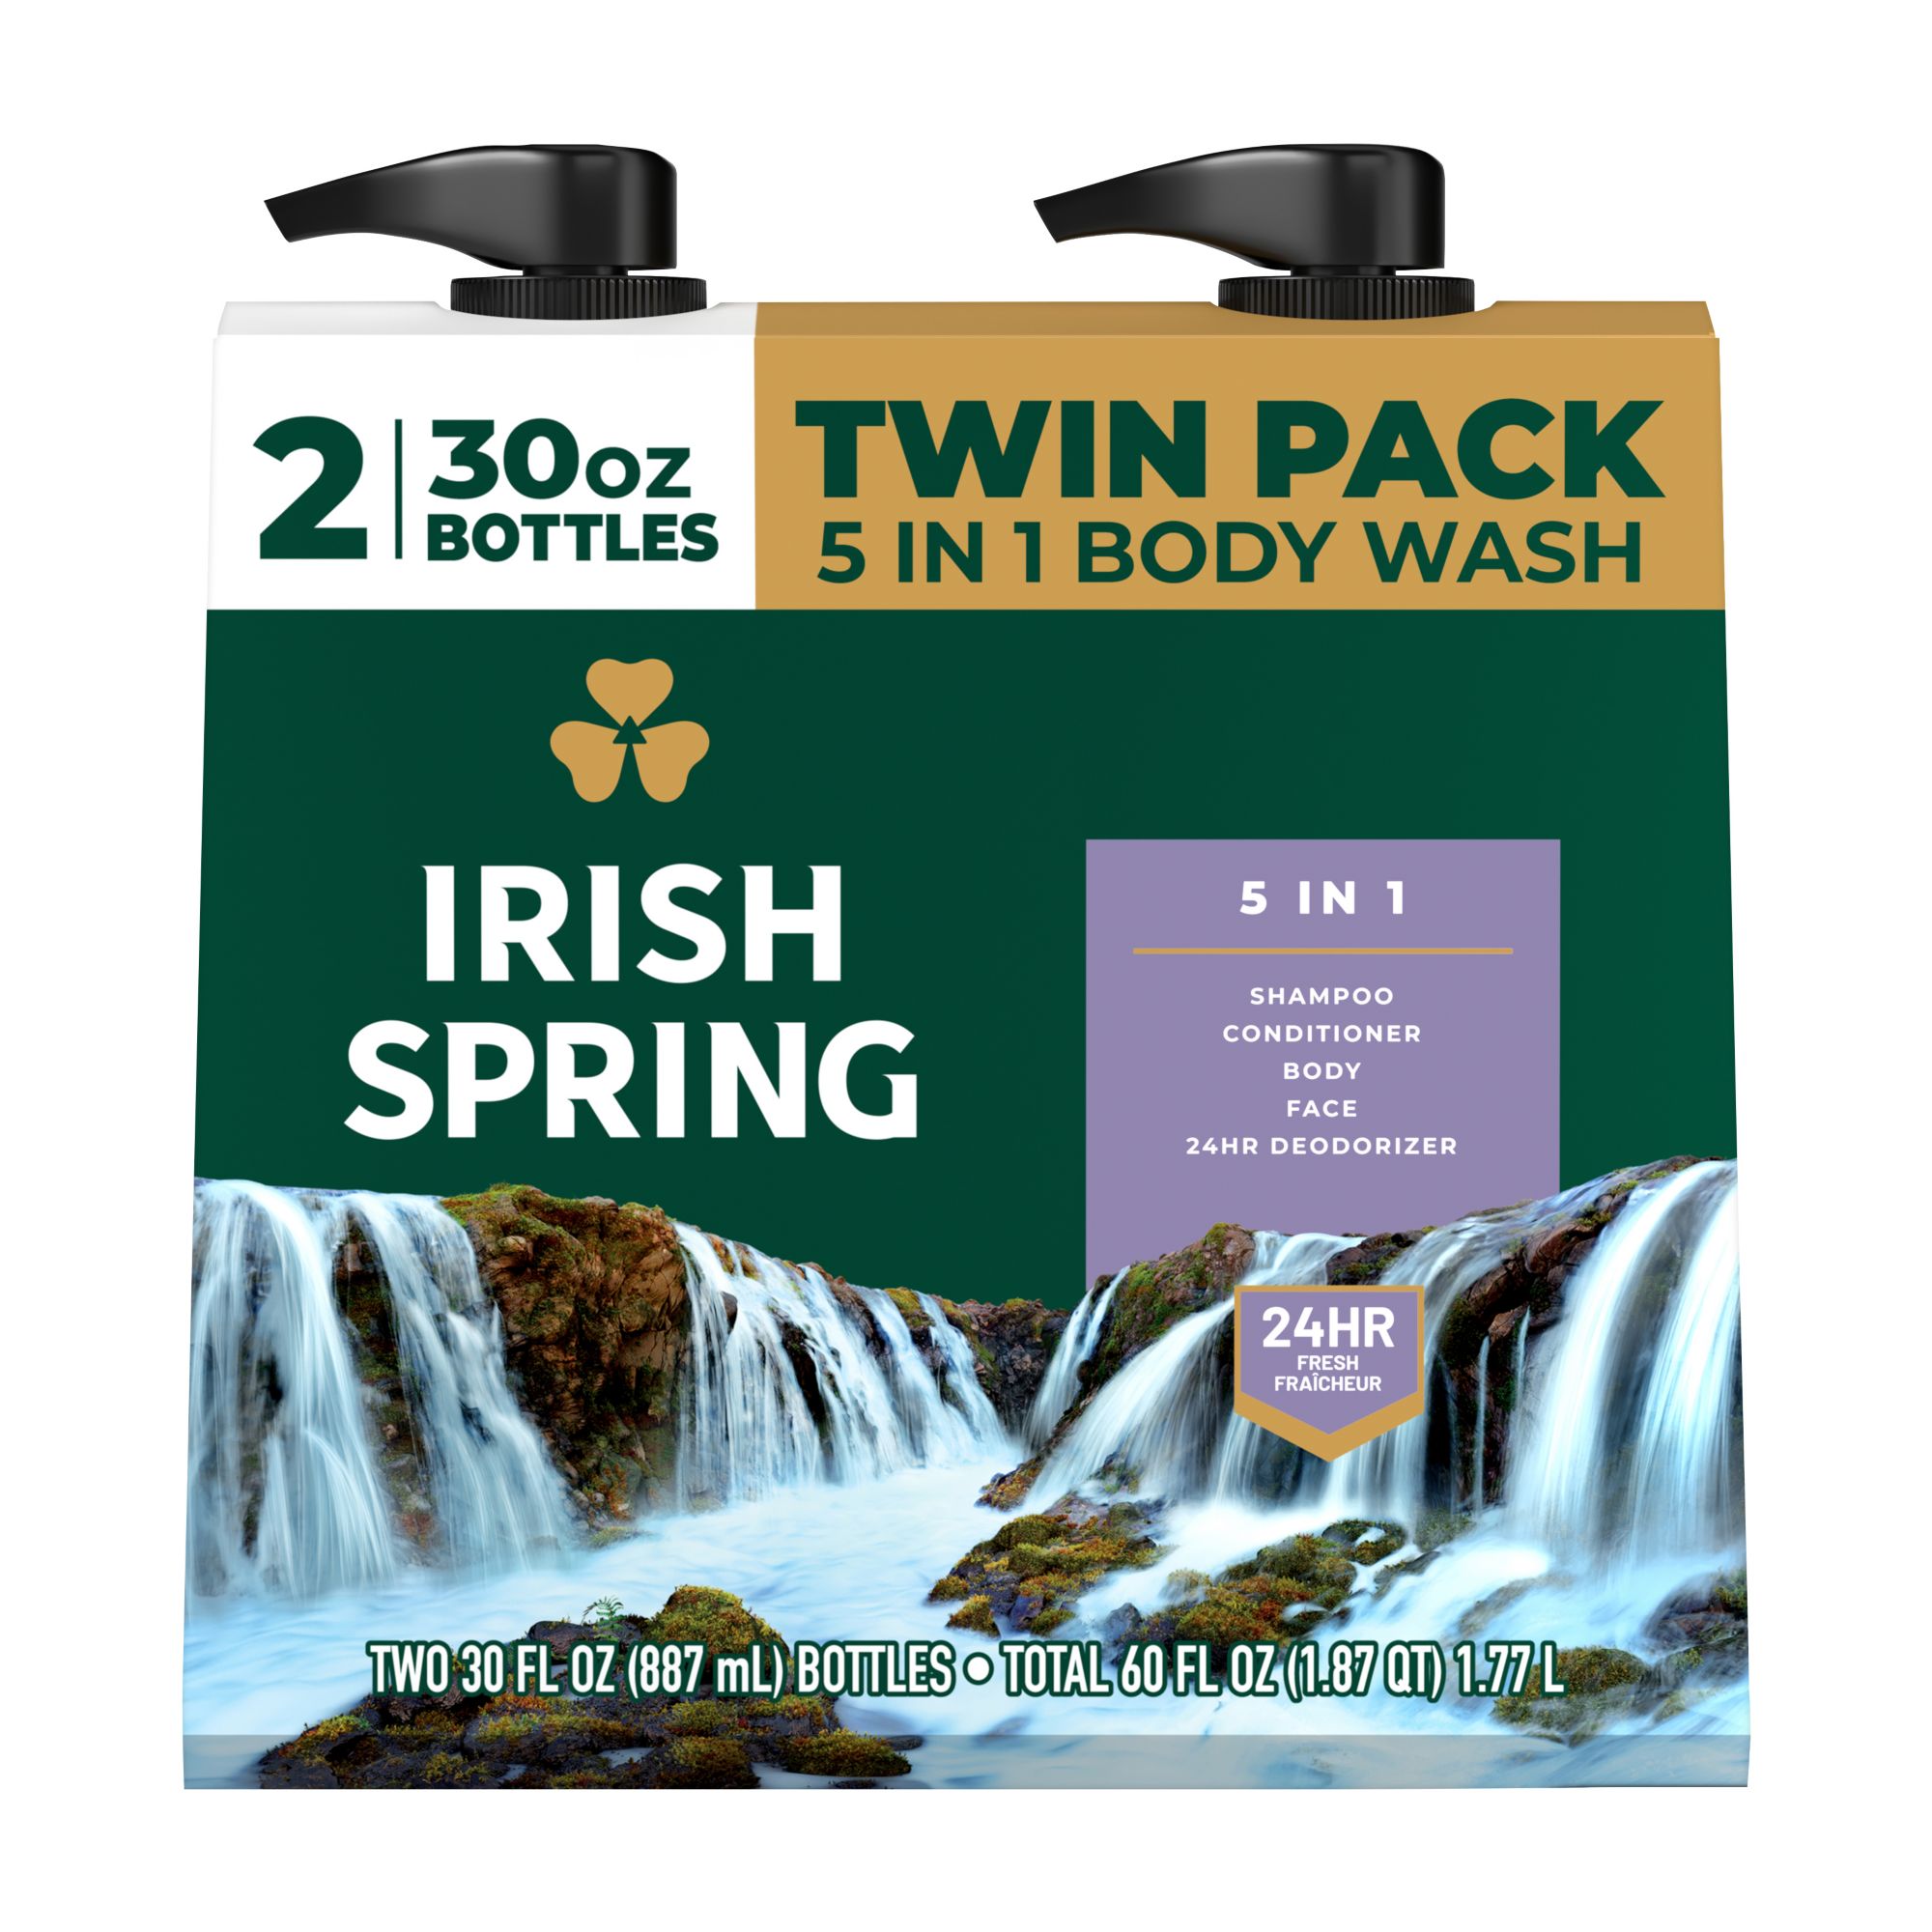 Irish Spring 5-in-1 Mens Body Wash, Pump, 2 pk./30oz.